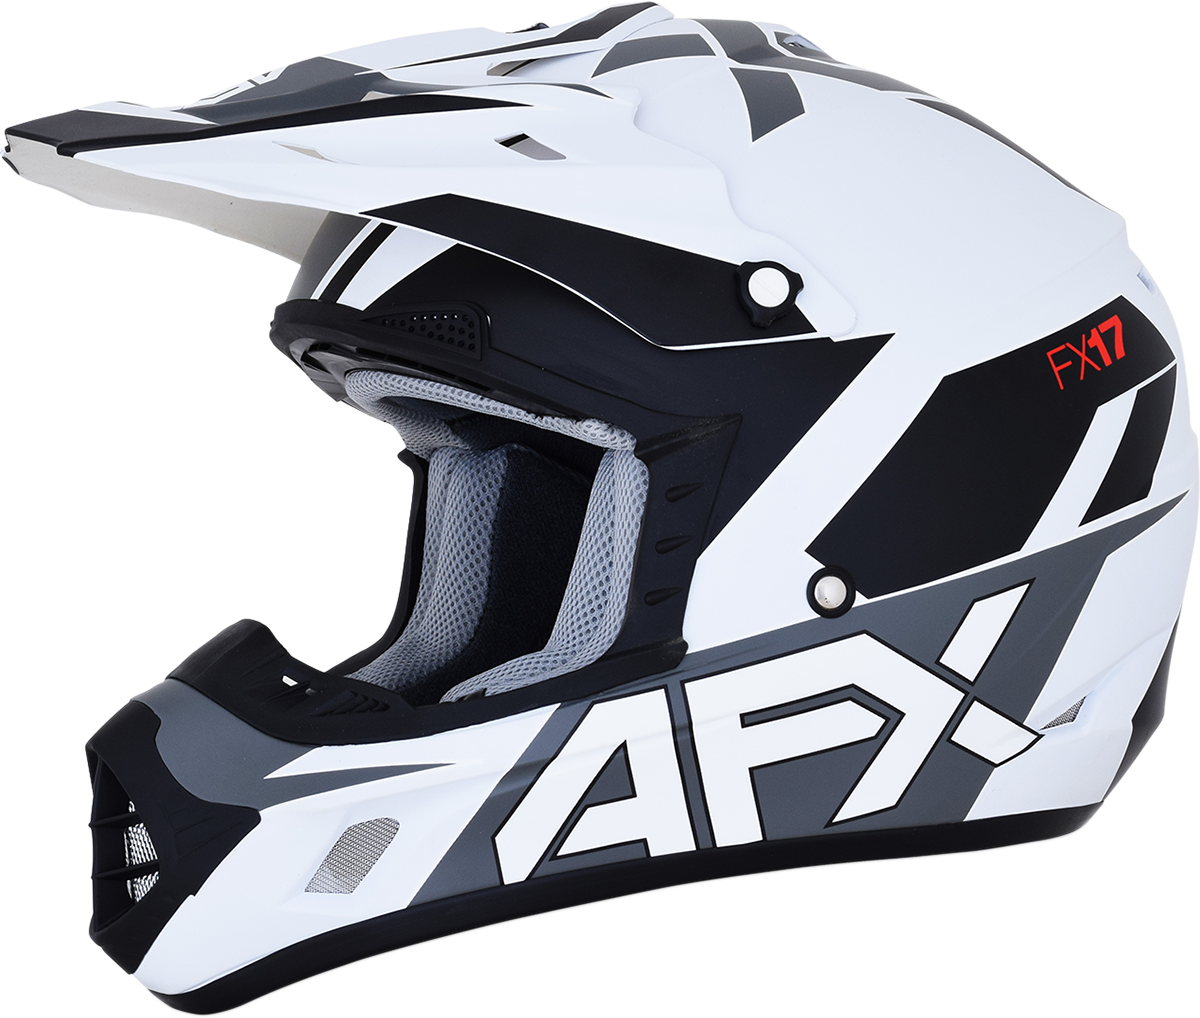 AFX FX-17 Helmet - Aced - Matte White/White - Medium 0110-6495